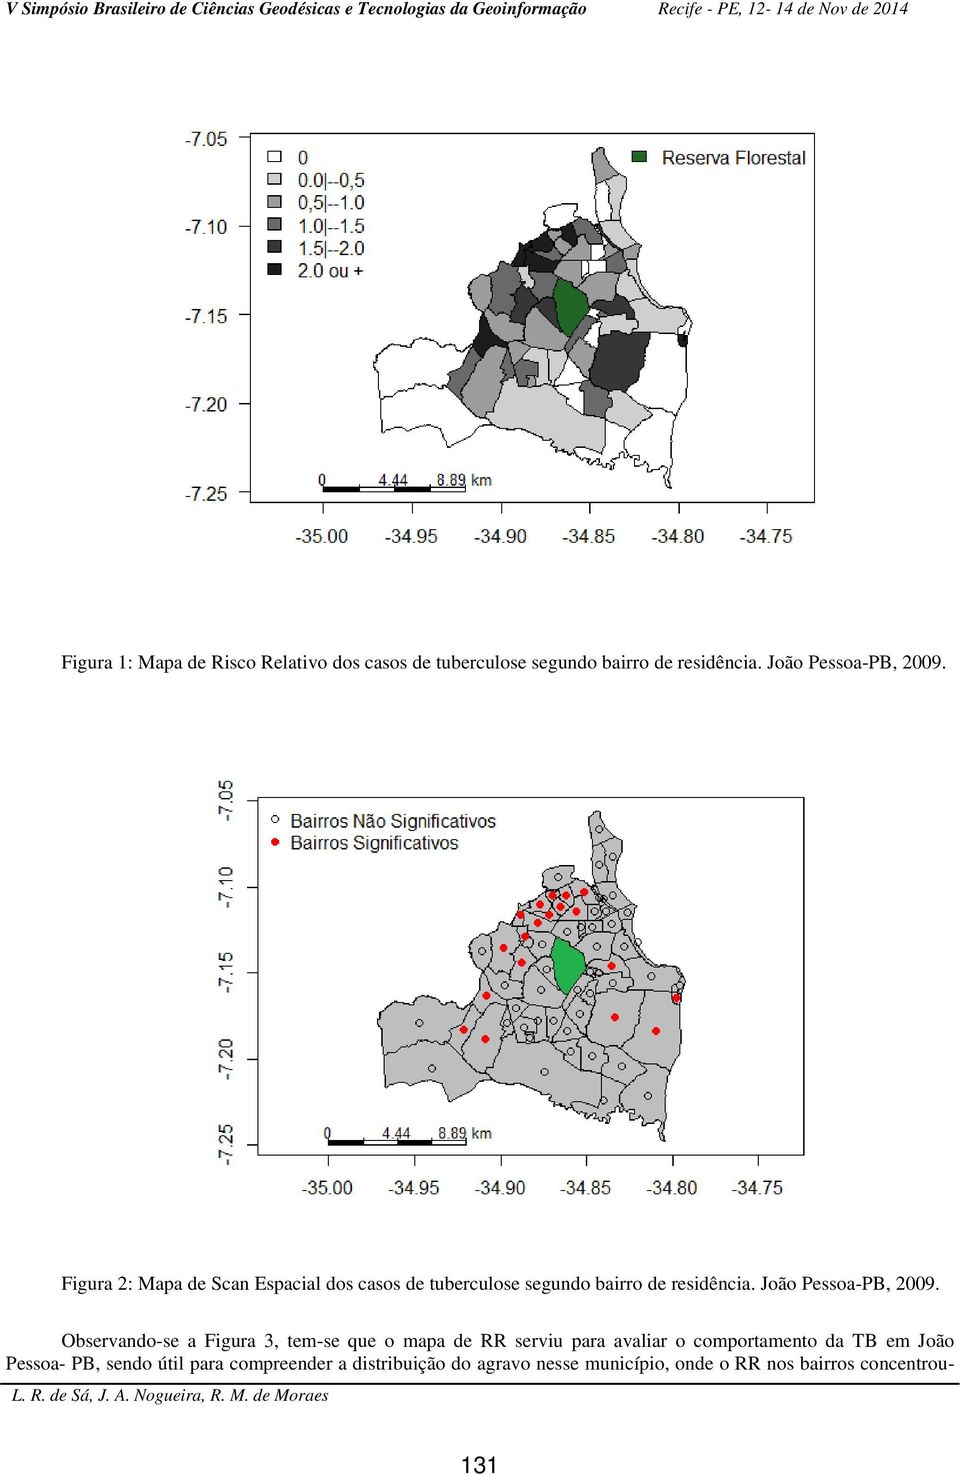 Observando-se a Figura 3, tem-se que o mapa de RR serviu para avaliar o comportamento da TB em João Pessoa-